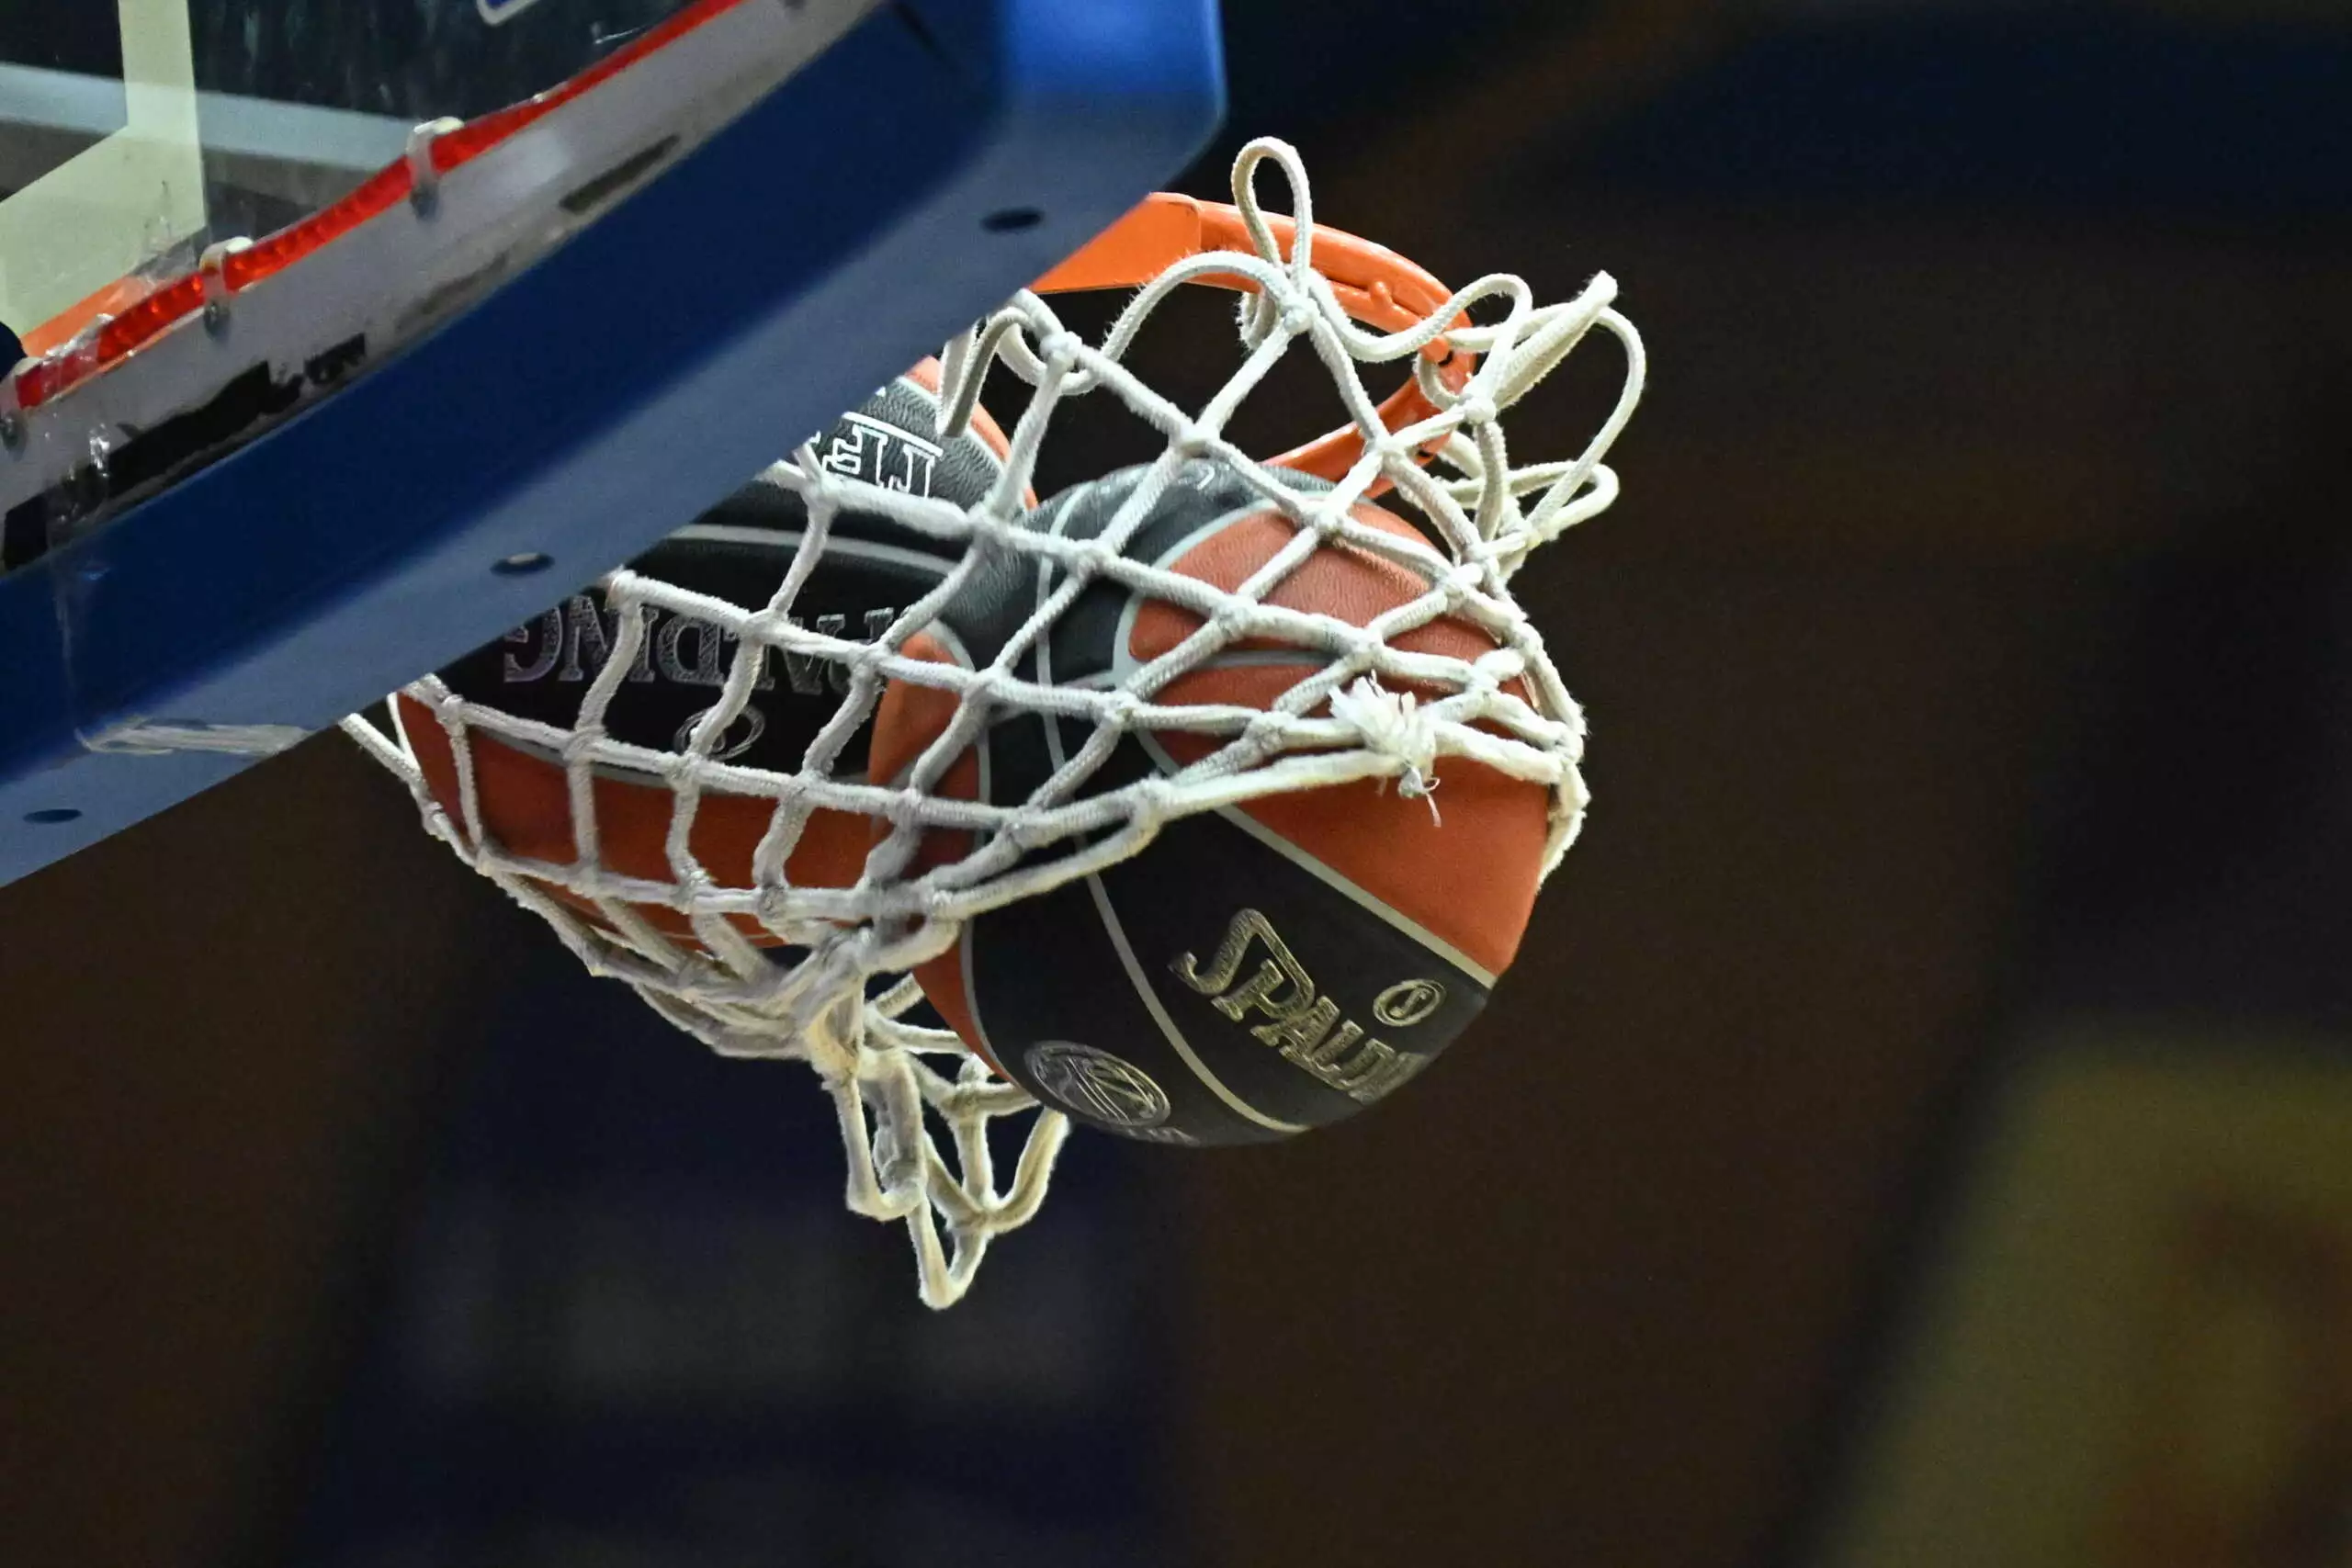 Η σύντροφος του παίκτη της ομάδας μπάσκετ Περιστερίου απέσυρε την καταγγελία για ενδοοικογενειακή βία